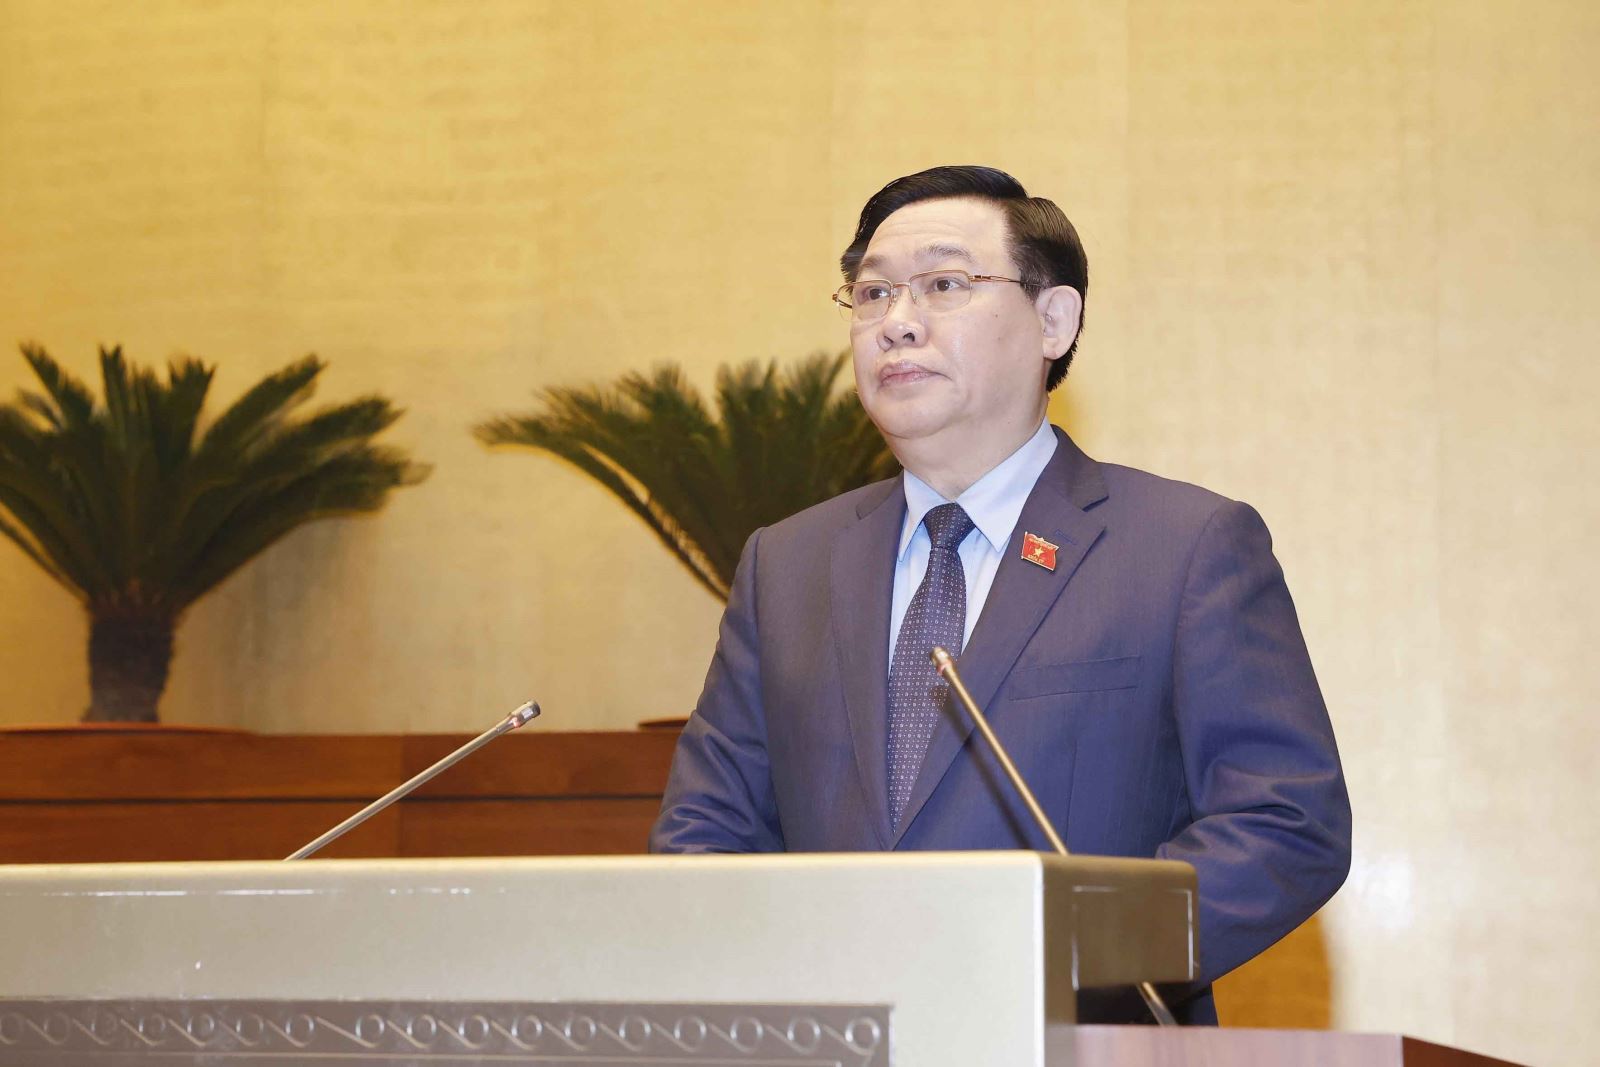 Chủ tịch Quốc hội Vương Đình Huệ phát biểu khai mạc hội nghị.